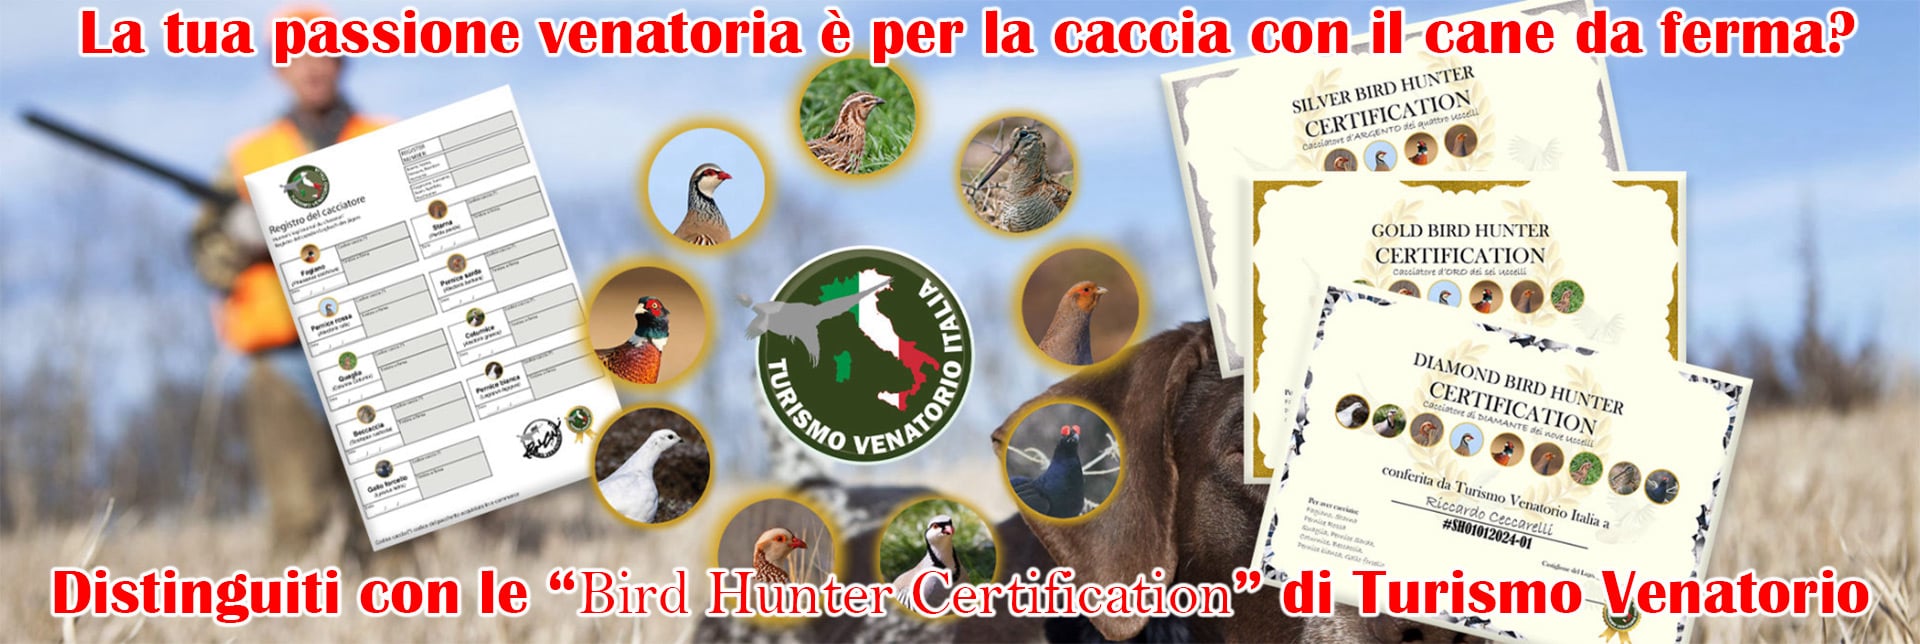 Bird Hunter Certification